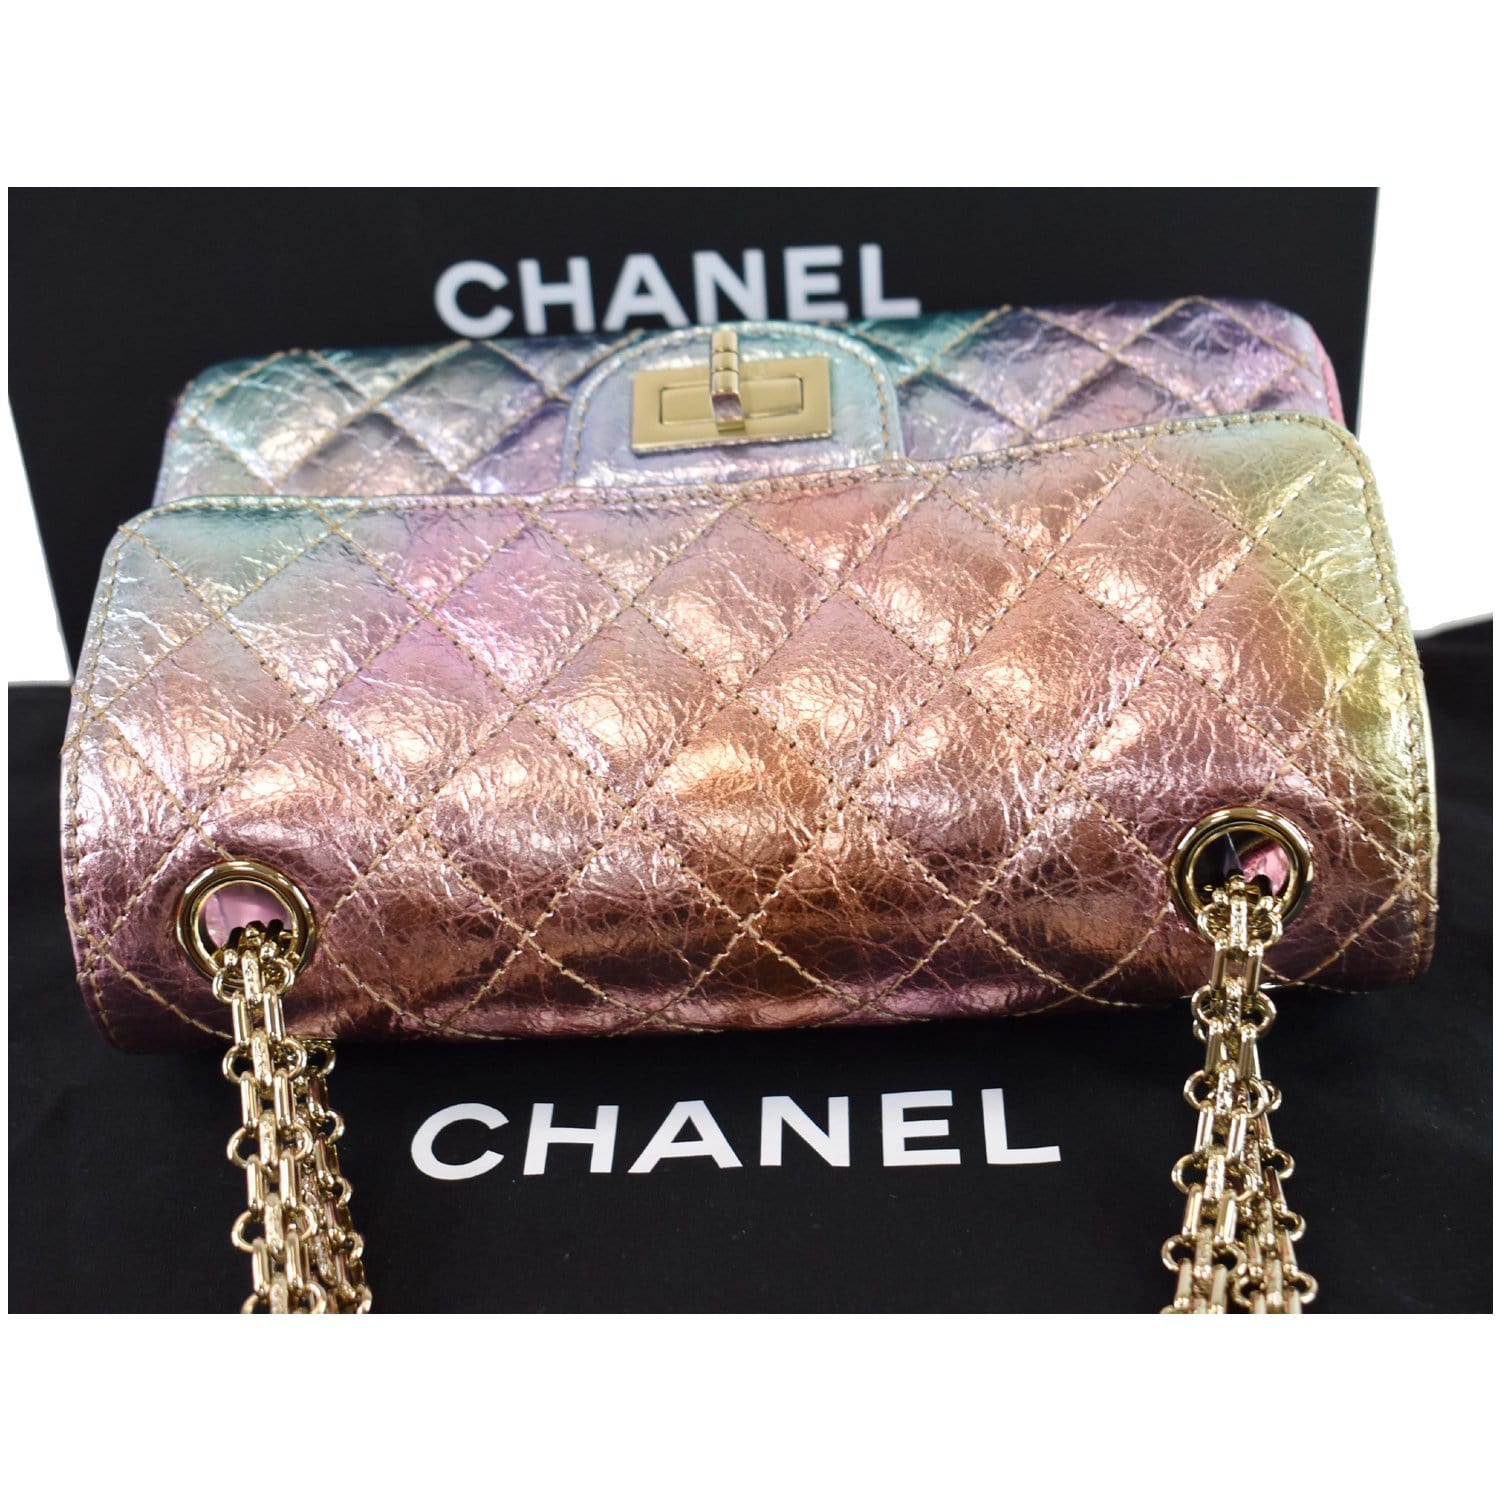 Chanel 2.55 Medium Bag Tweed Multi-Color - Silver Hardware